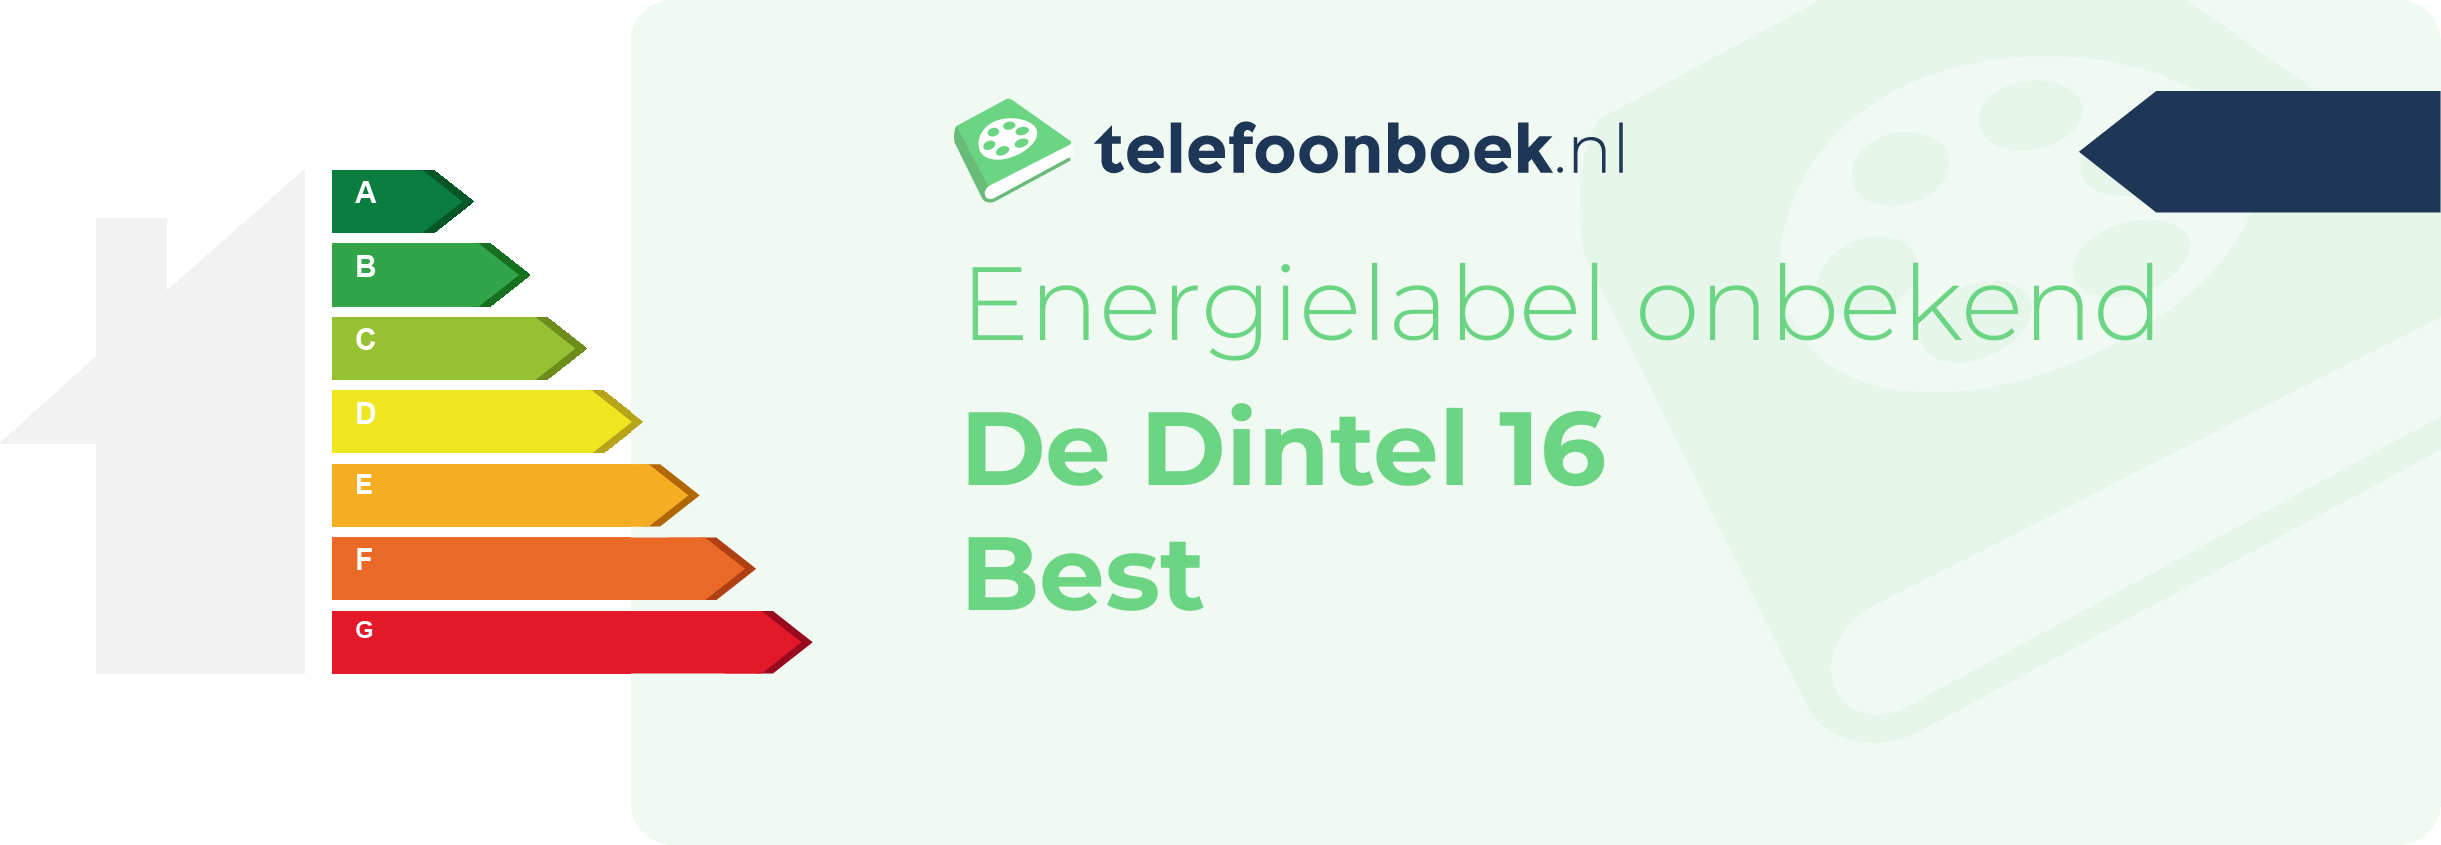 Energielabel De Dintel 16 Best